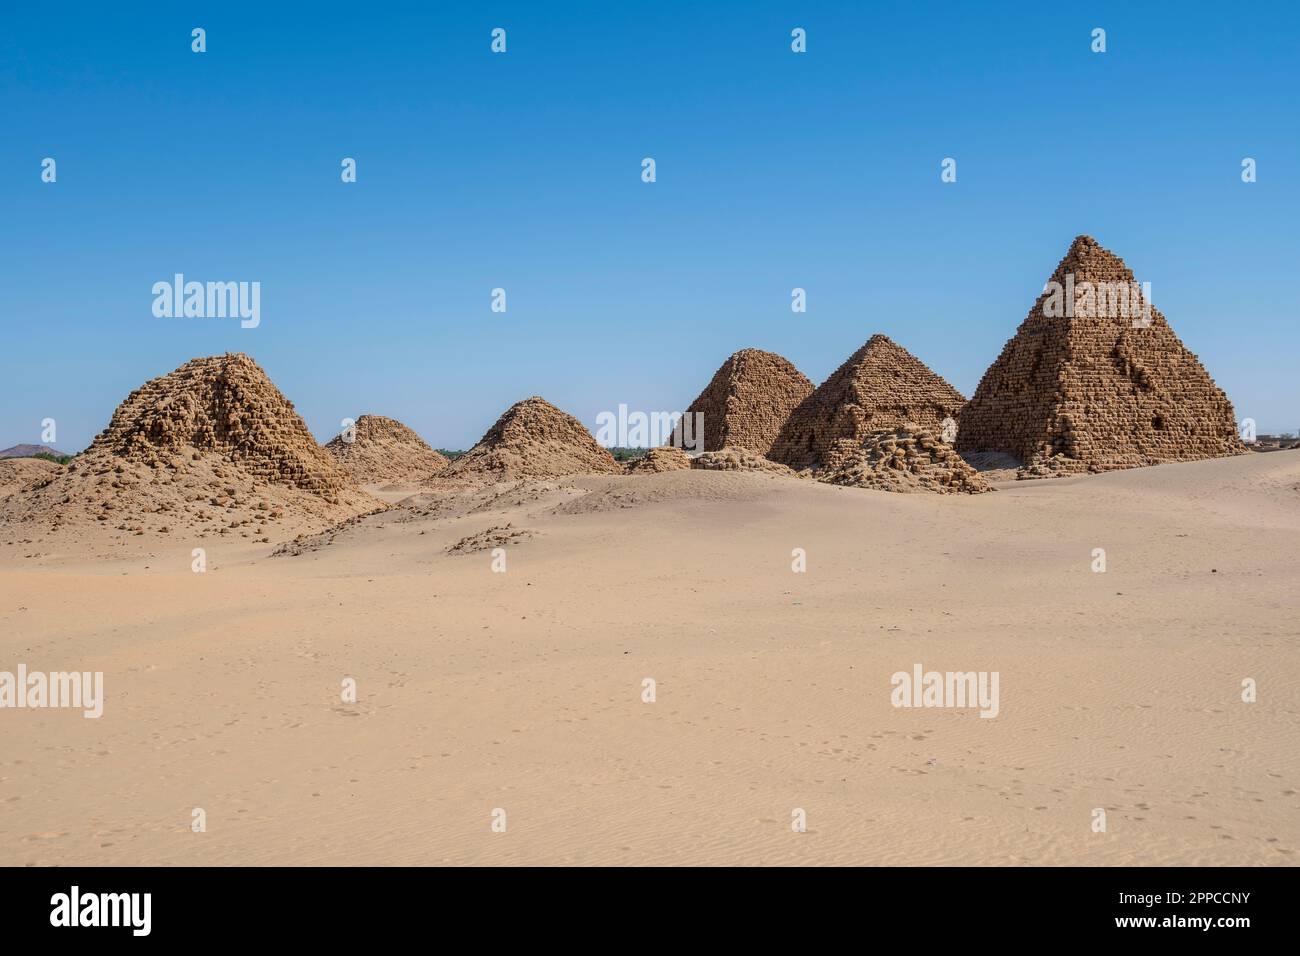 The Pyramids of Nuri, Sudan Stock Photo